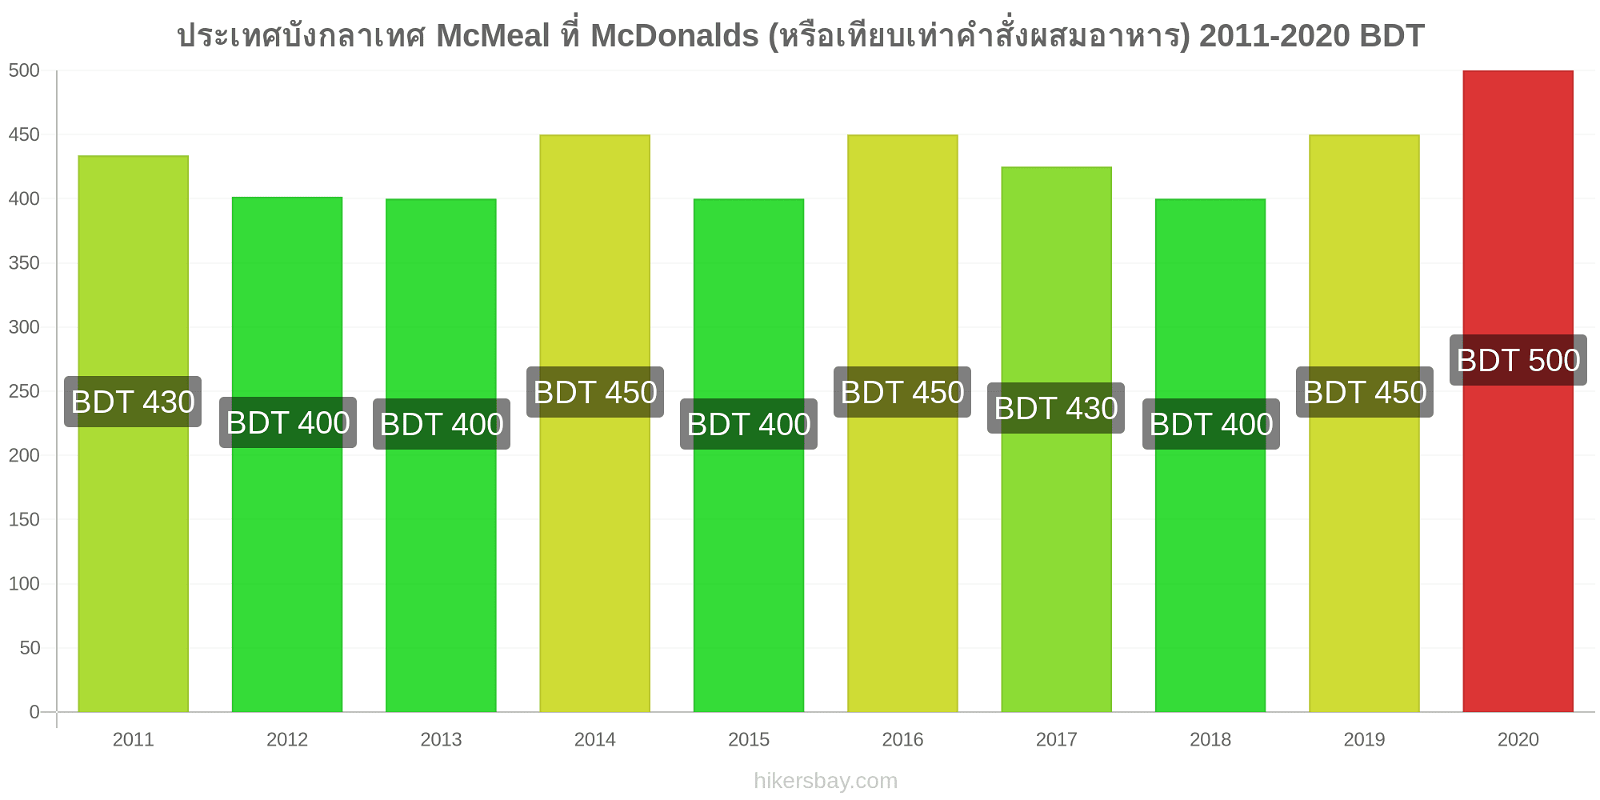 ประเทศบังกลาเทศ การเปลี่ยนแปลงราคา McMeal ที่ McDonalds (หรือเทียบเท่าคำสั่งผสมอาหาร) hikersbay.com